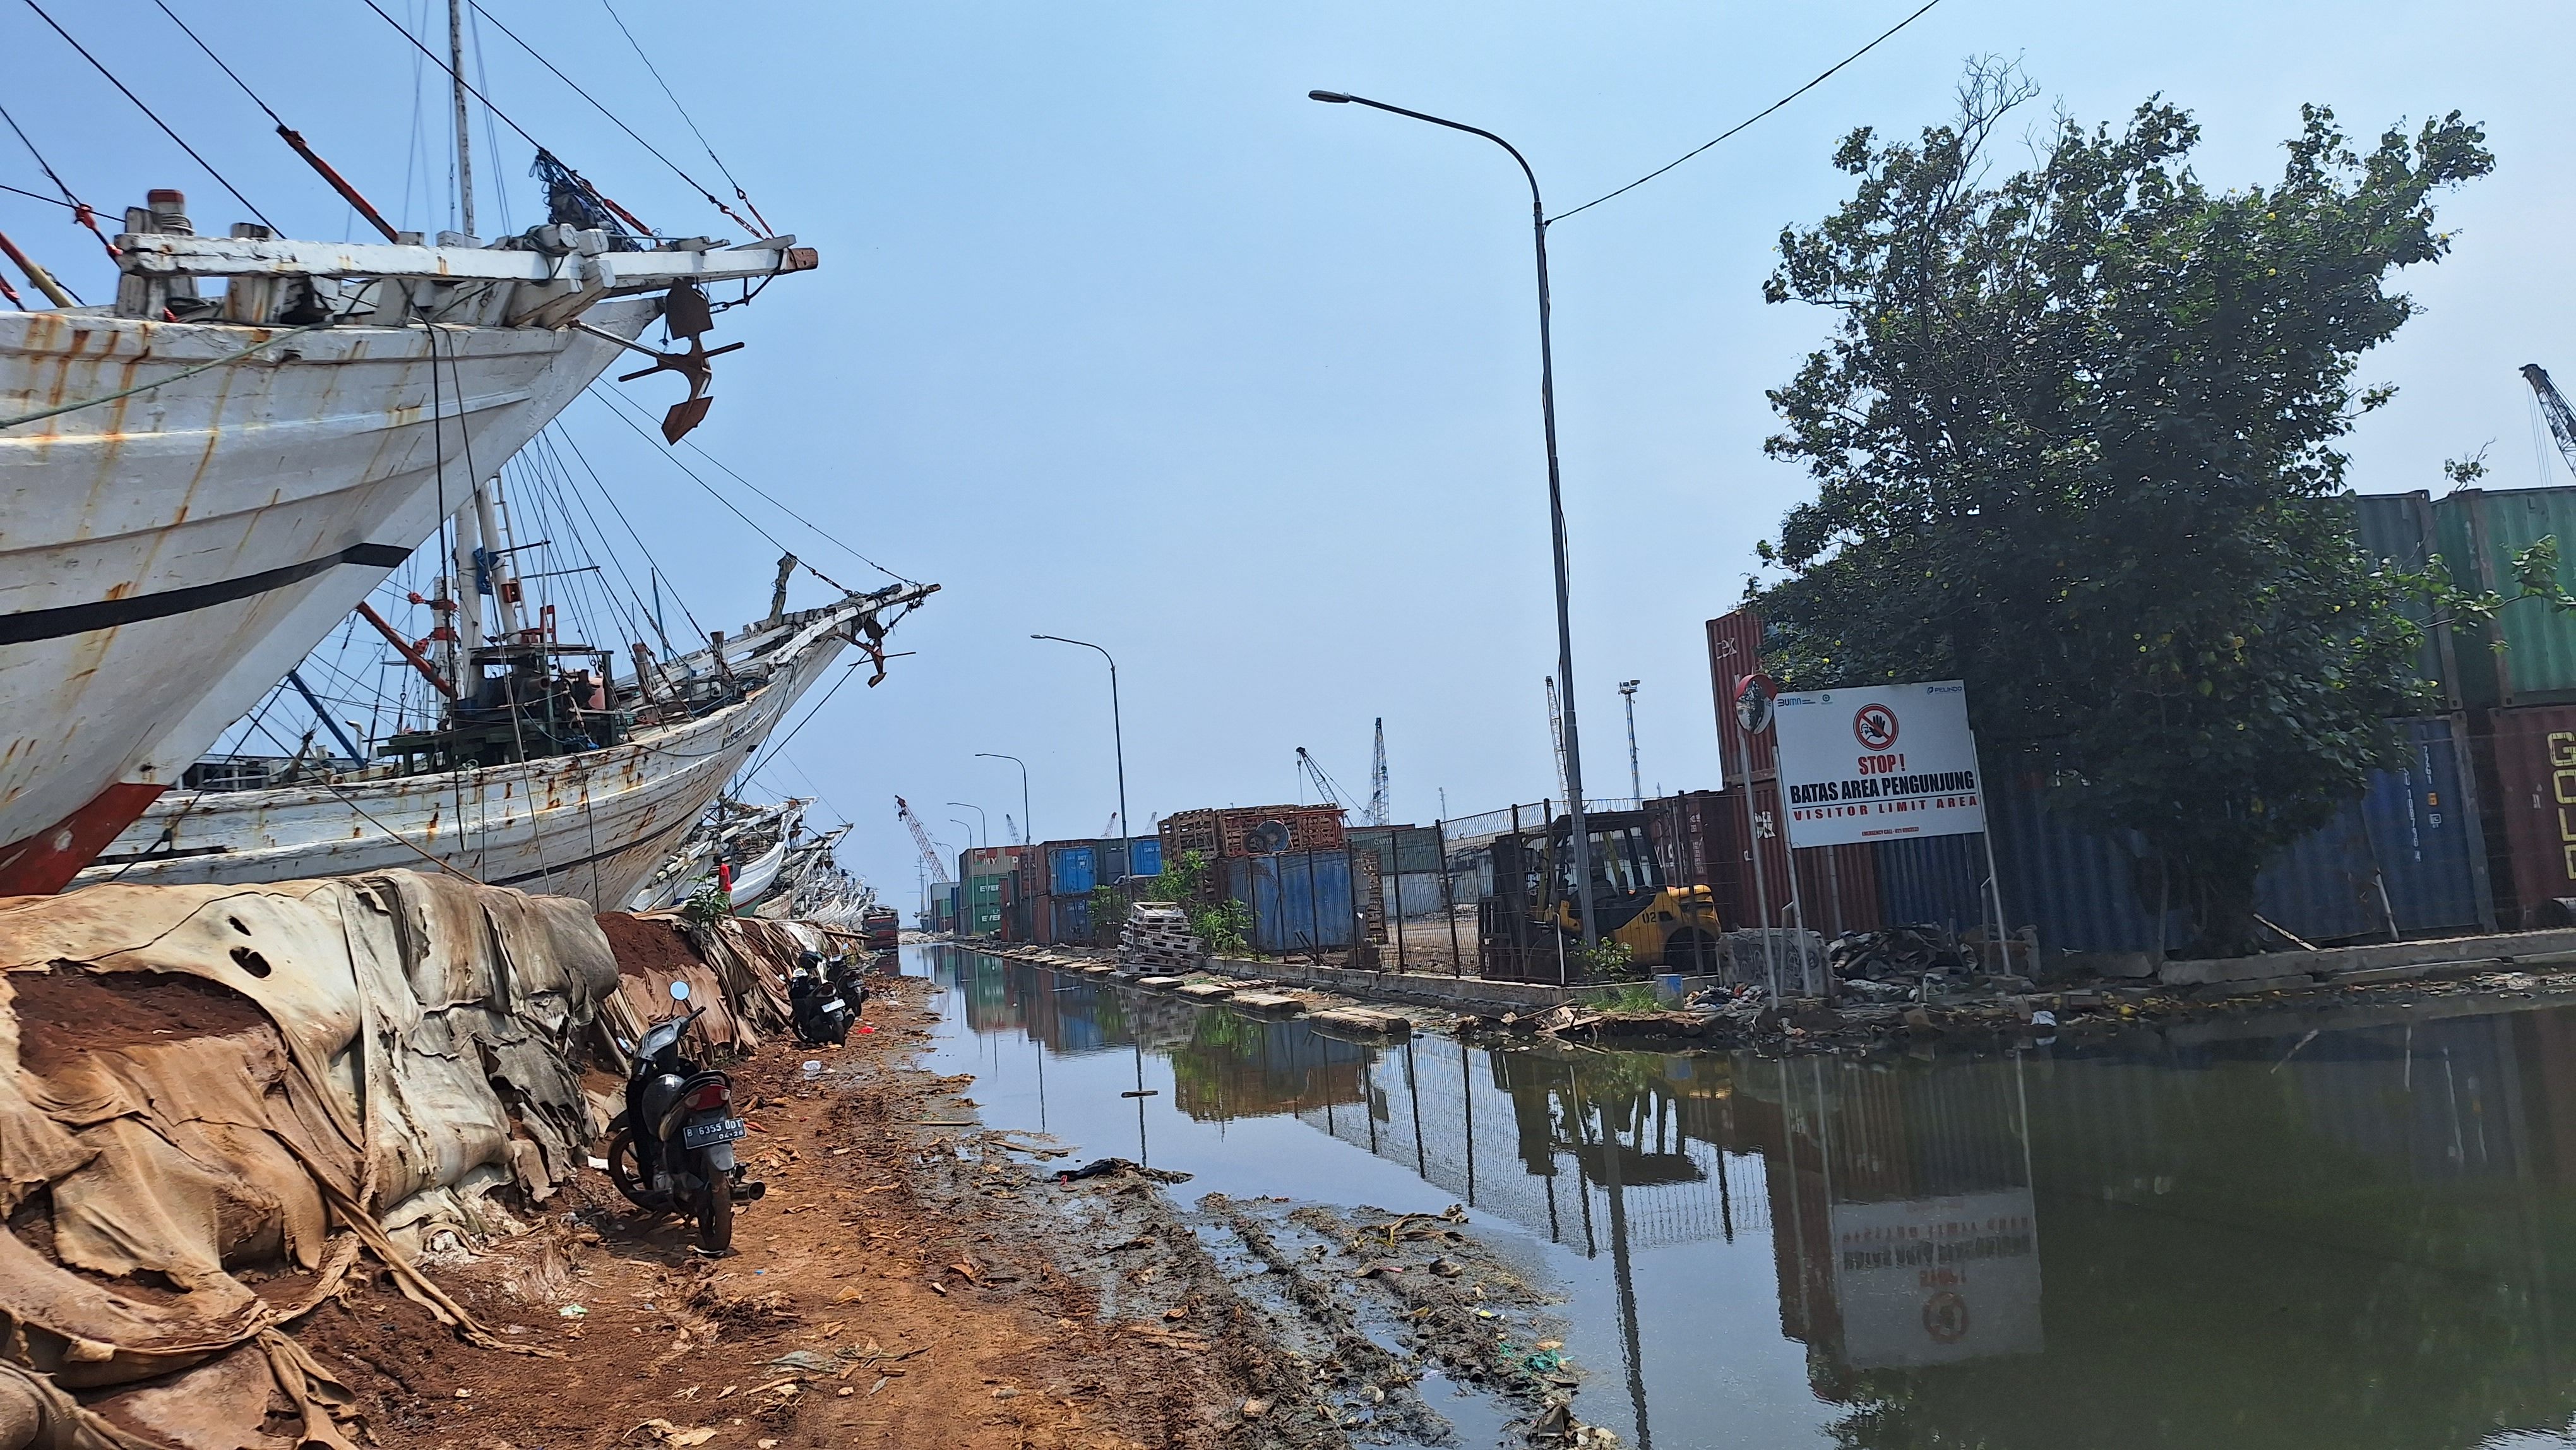 Banjir dan Fasilitas Rusak, Pekerja di Pelabuhan Sunda Kelapa: Tolong Perbaiki supaya Banyak Pengunjung...